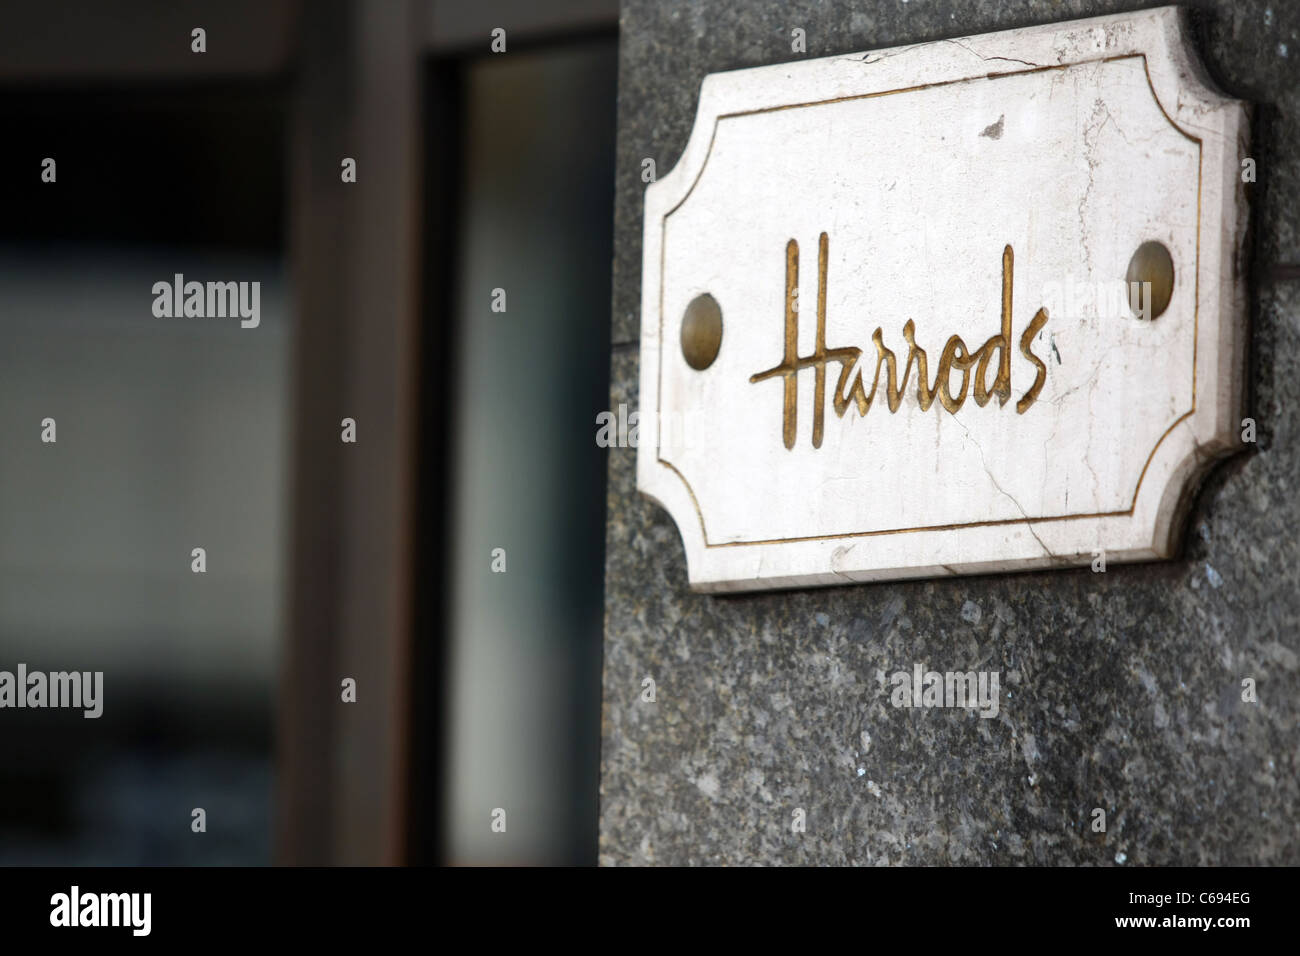 Un Harrods situées sur l'avant de son magasin de Knightsbridge Banque D'Images